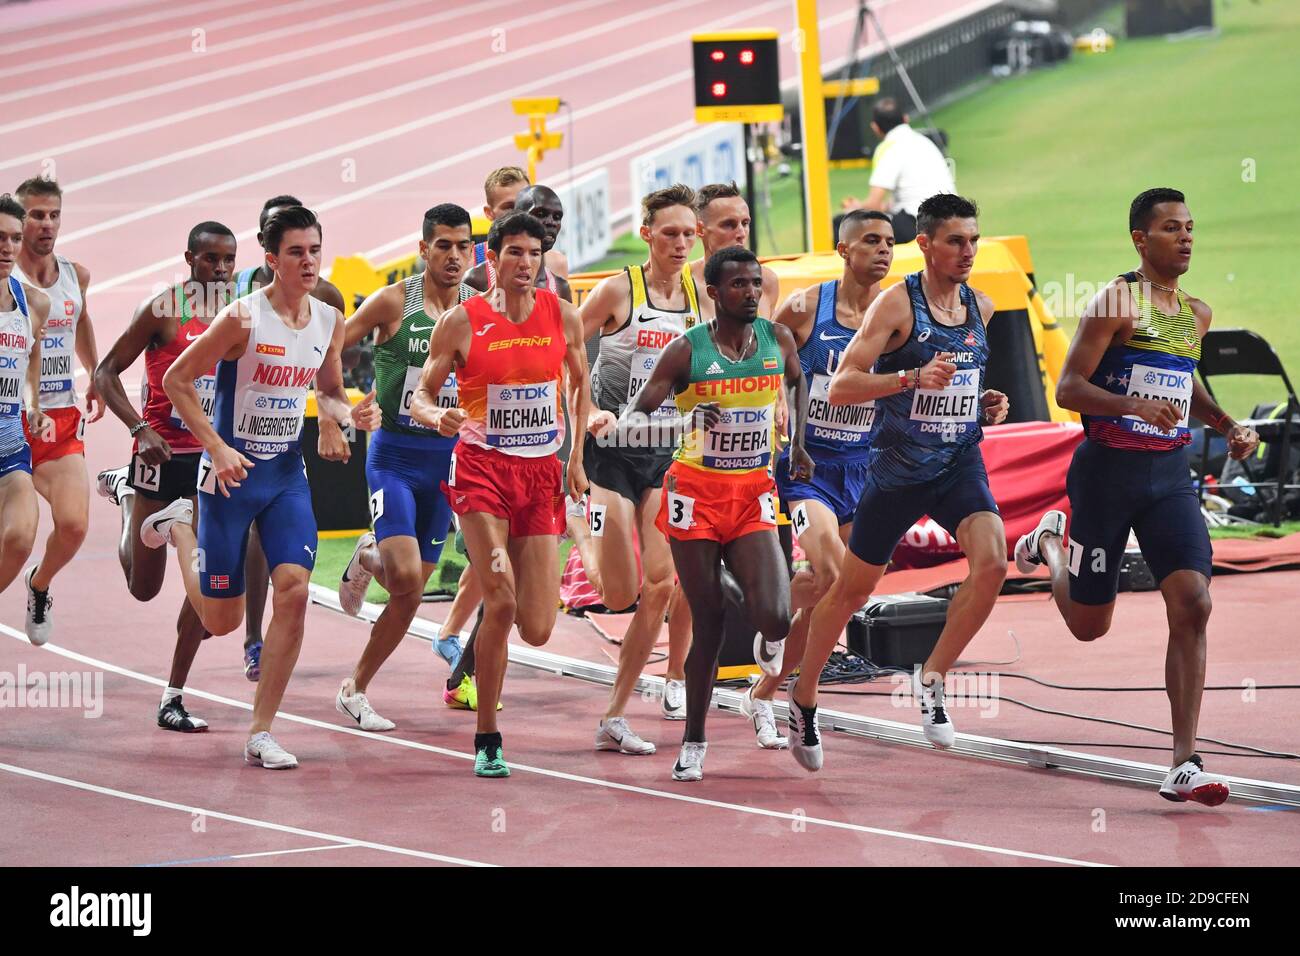 Lucirio Garrido, Alexis Miellet, Abraham Kipchircher Rotich, Samuel Tefera, Adel Mechaal. 1500 mètres. Championnats du monde d'athlétisme de l'IAAF, Doha 2019 Banque D'Images